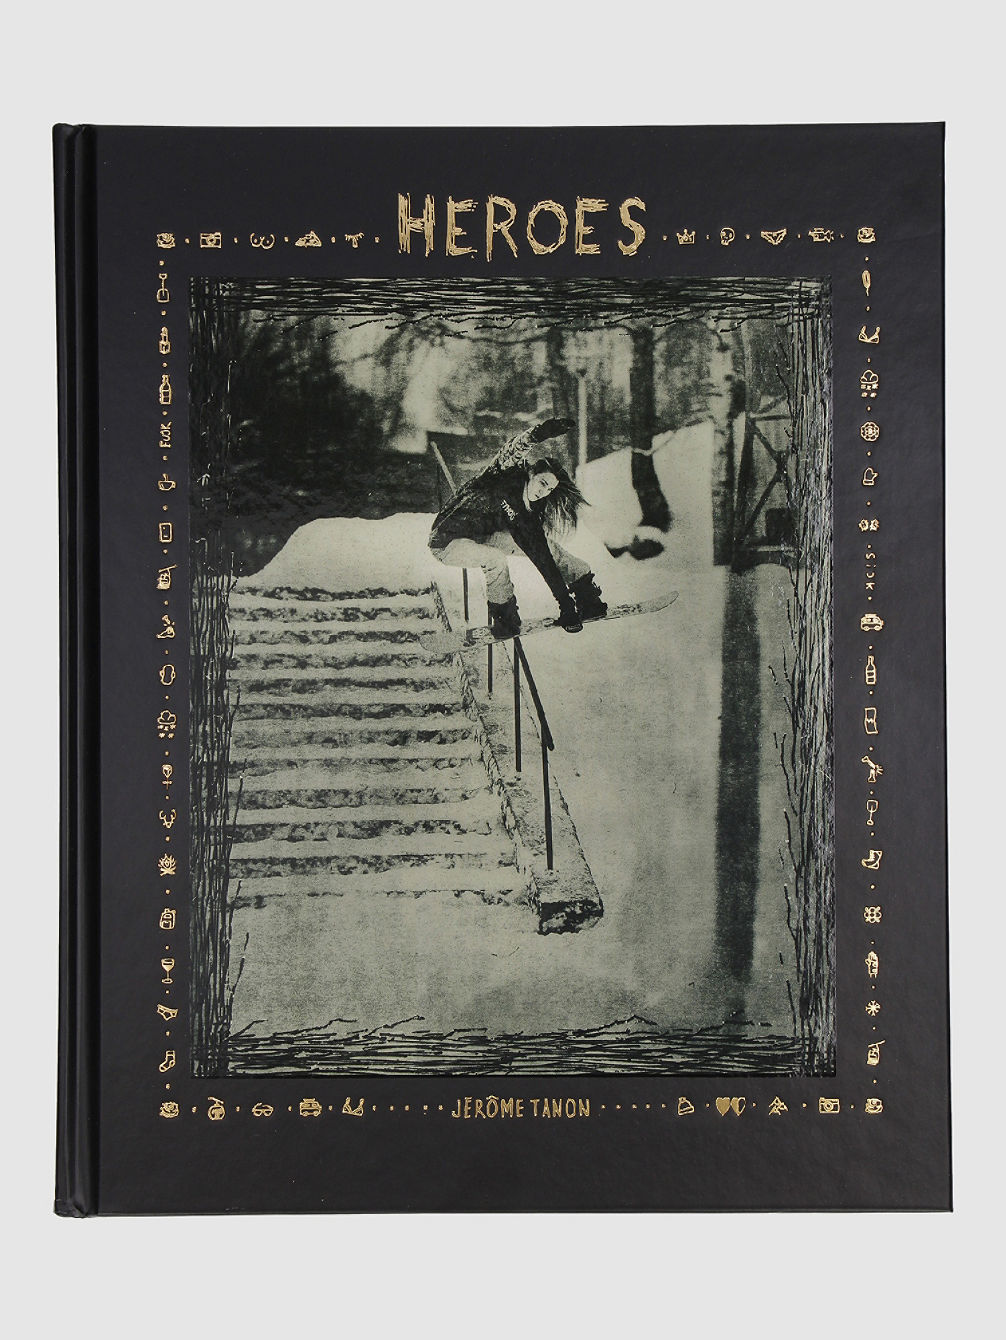 Heroes - Women in Snowboarding Buch